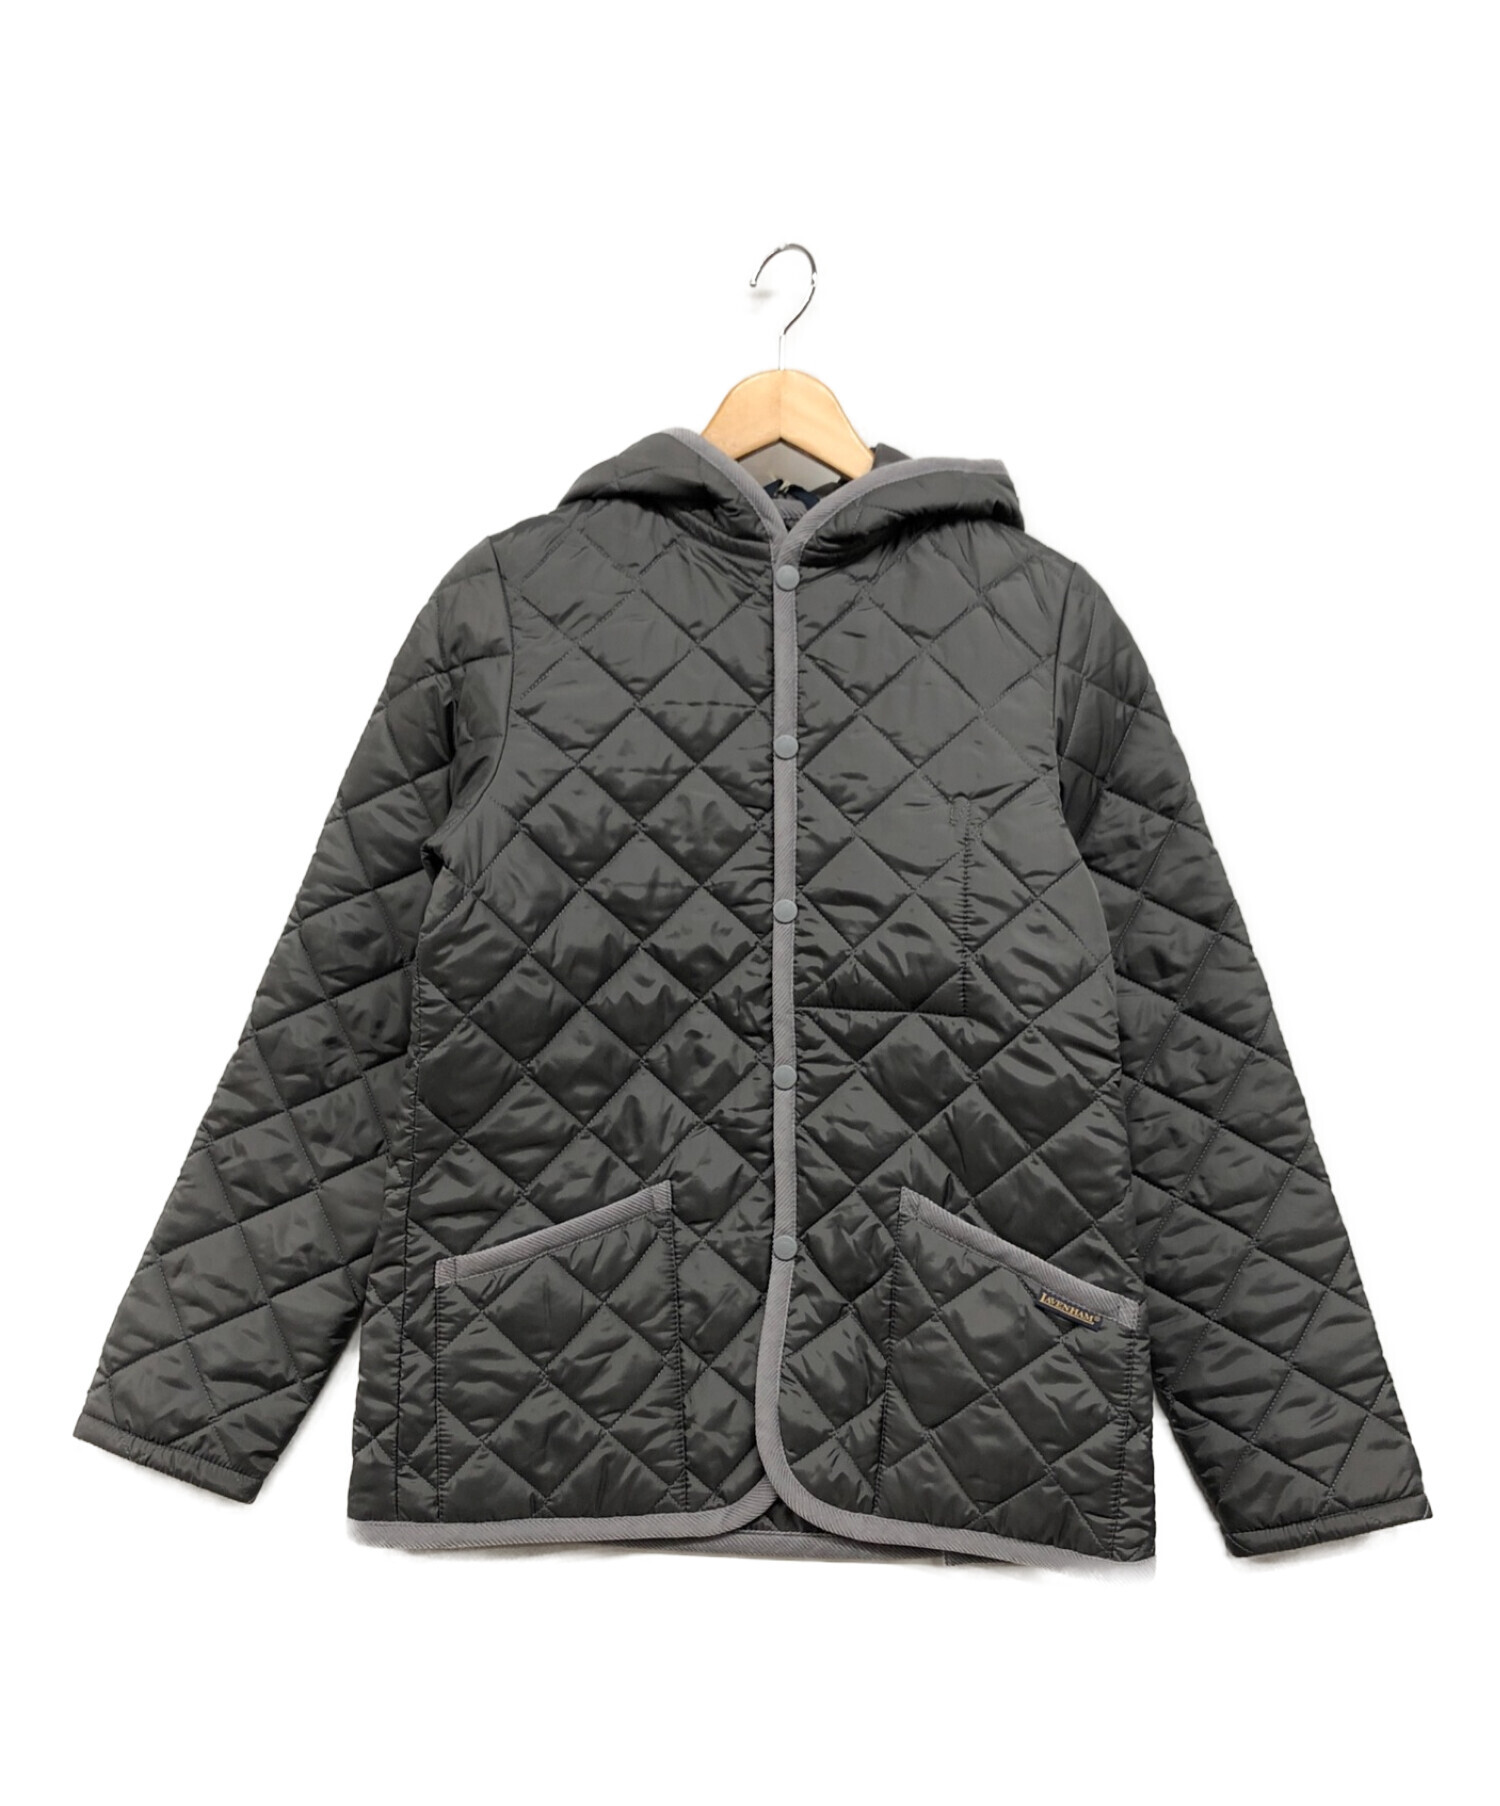 LAVENHAM (ラベンハム) CRAYDONキルティングジャケット ライトグレー サイズ:38 未使用品